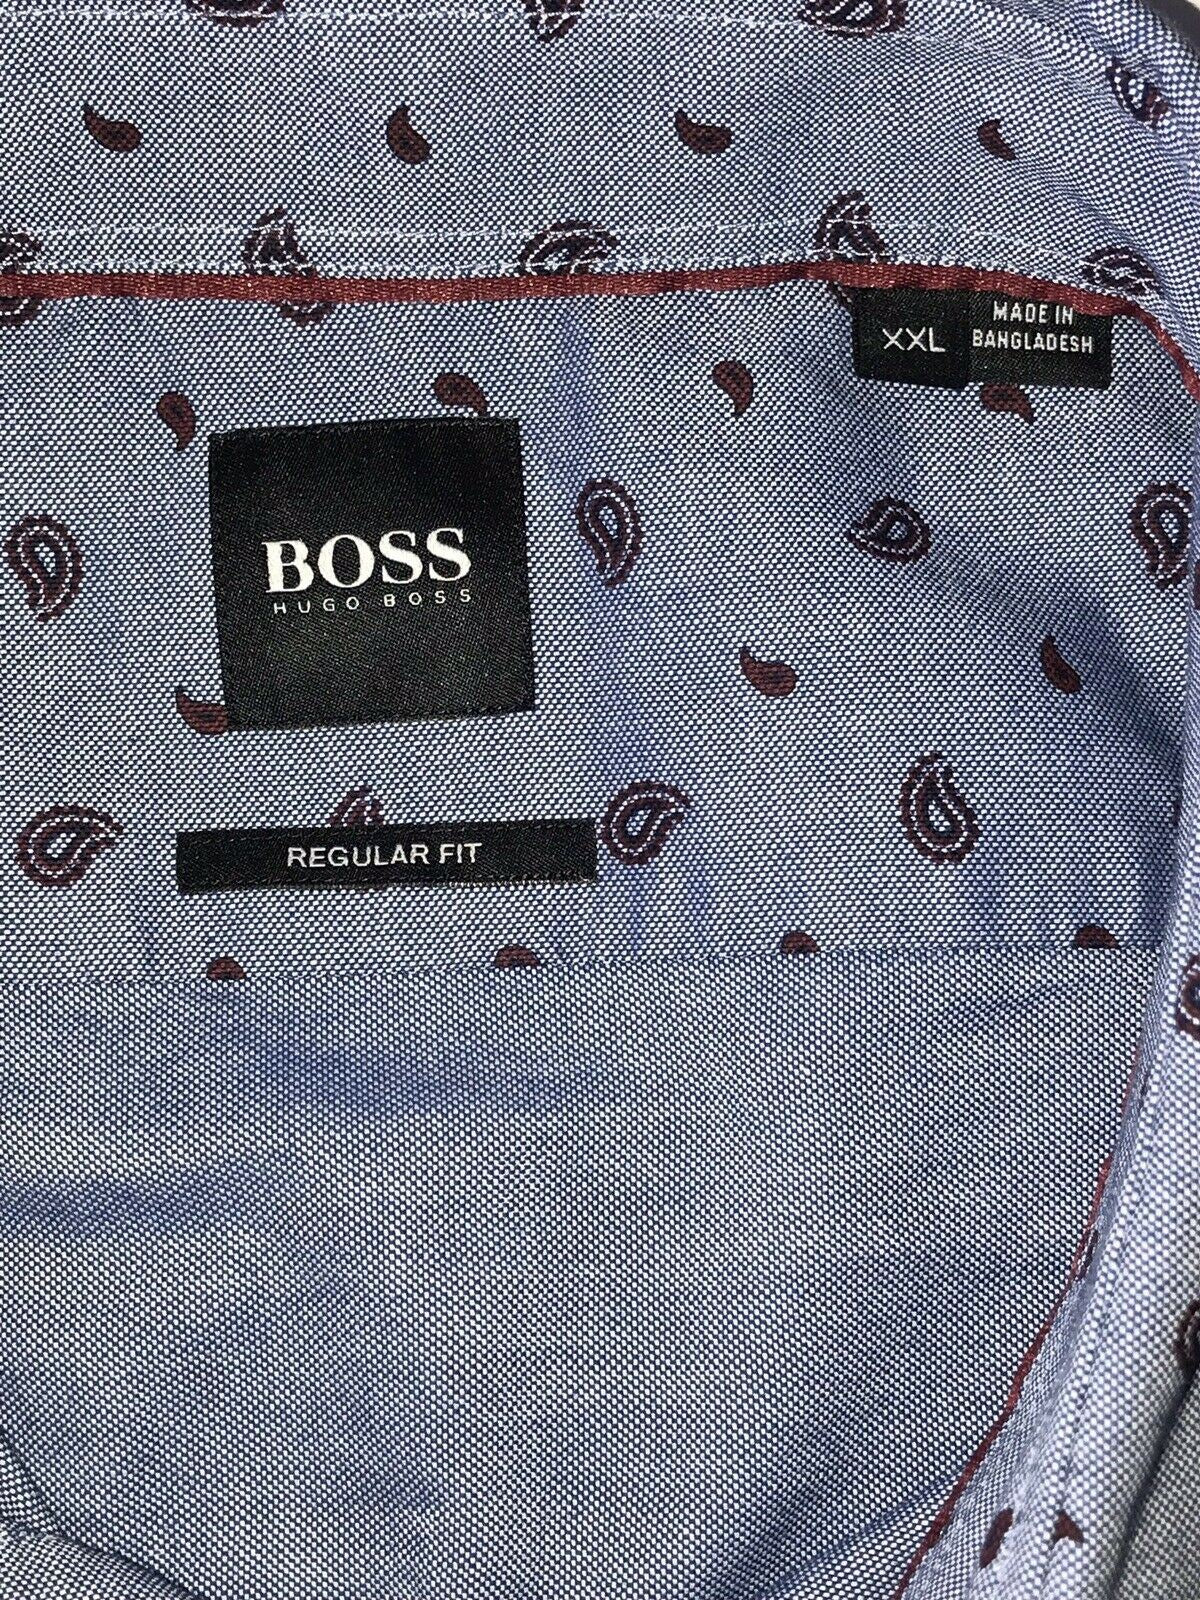 NWT $148 Hugo Boss Lucas Mens Regular Fit Cotton Blue Dress Shirt Size 2XL